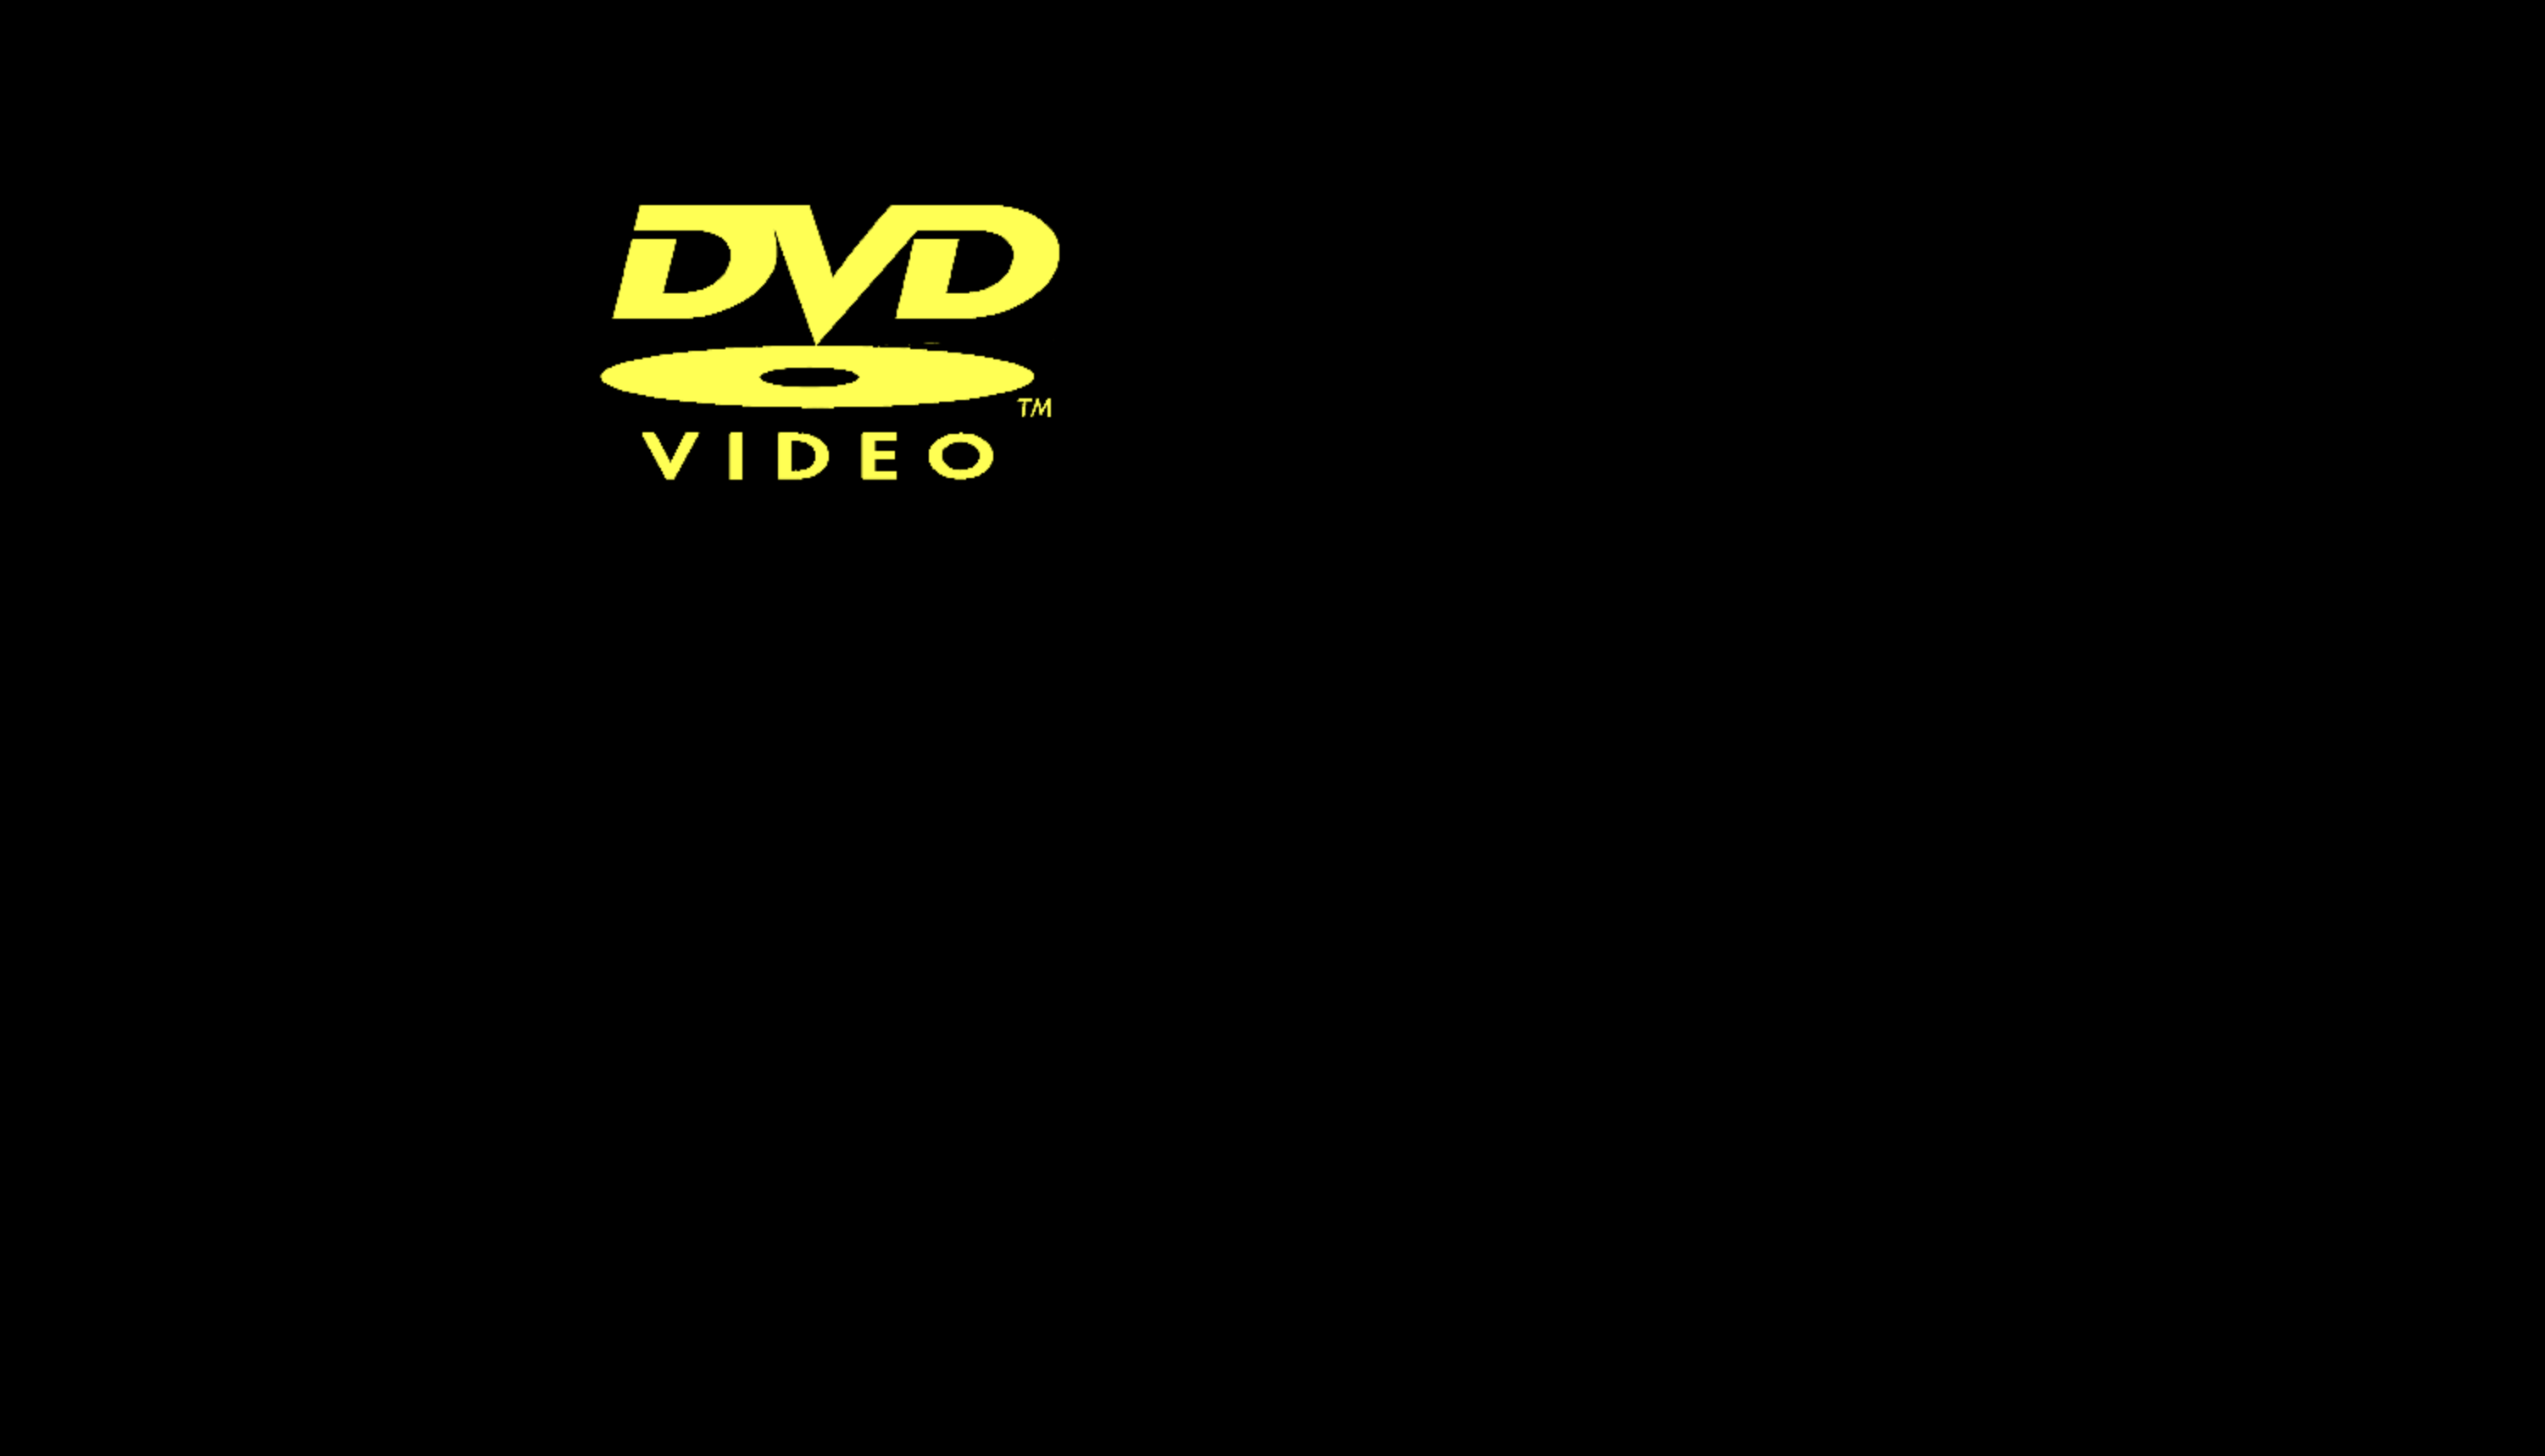 DVD logo screensaver